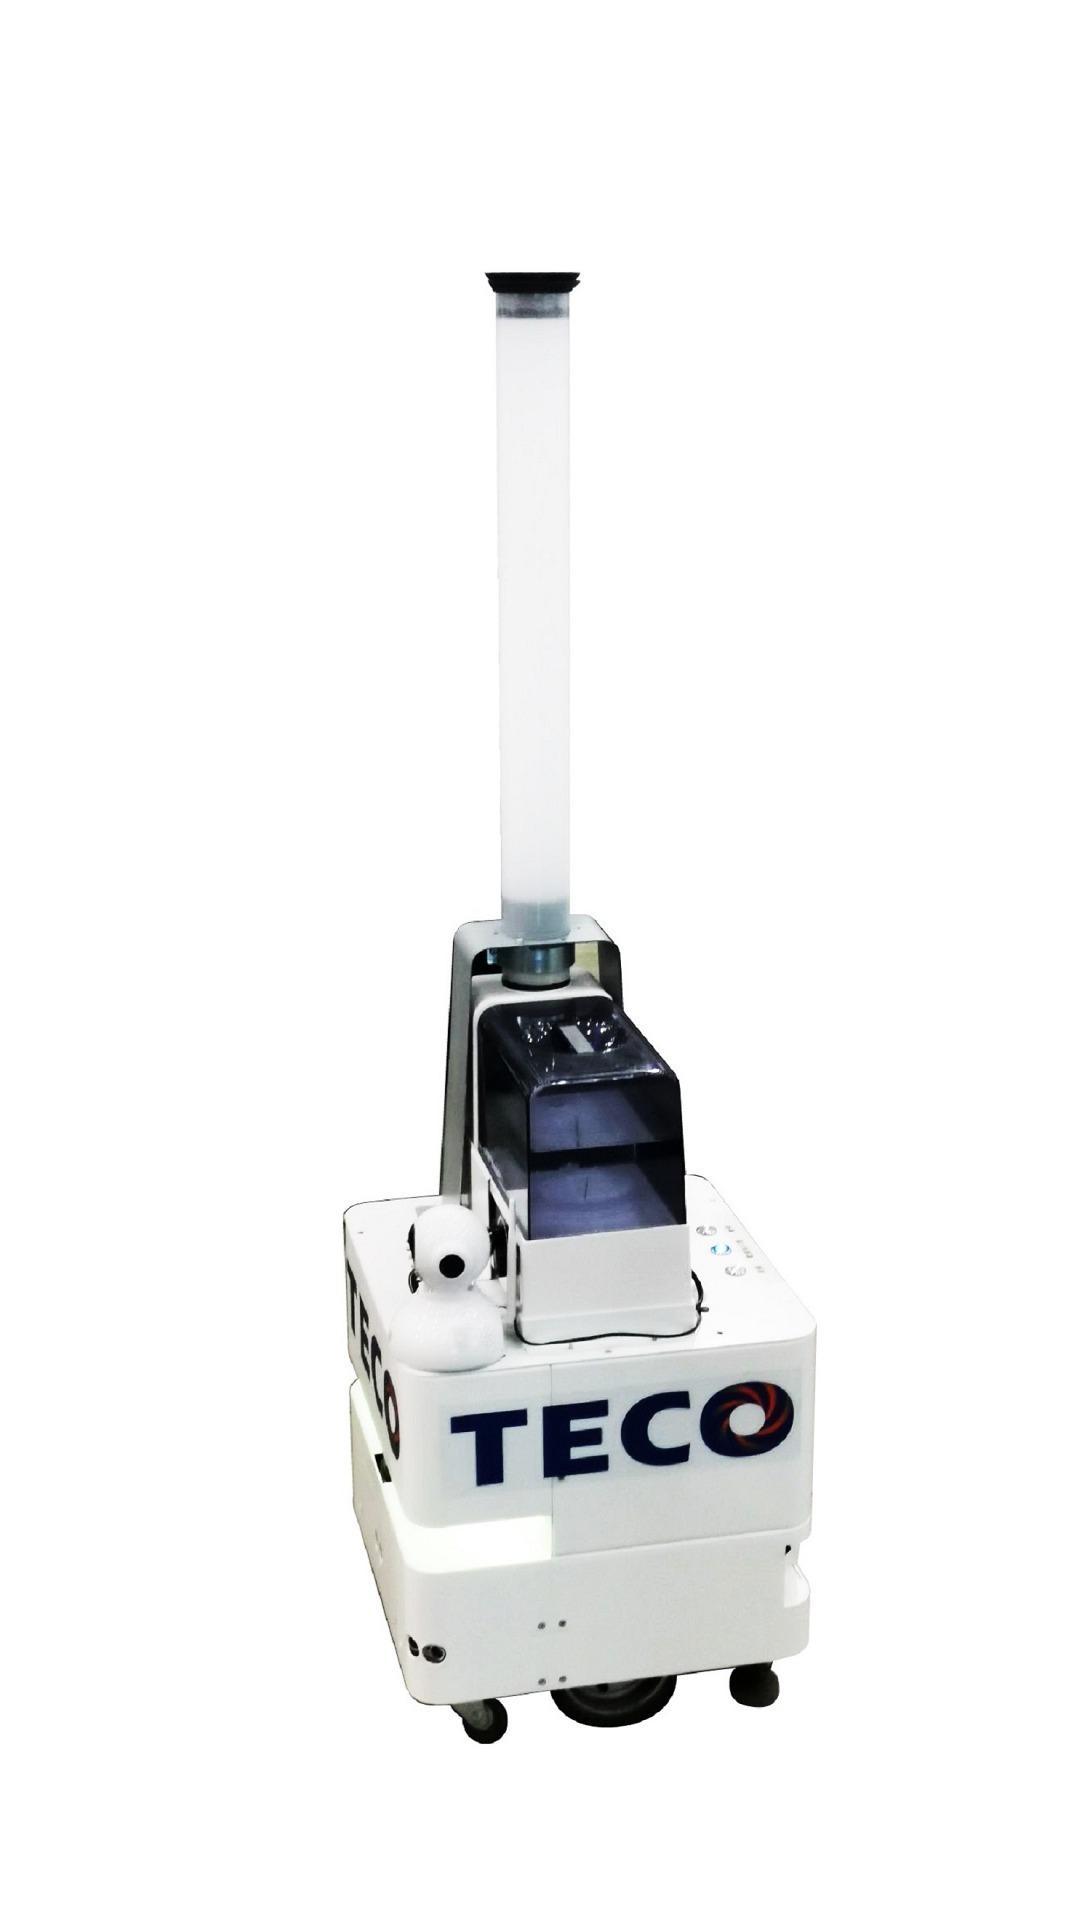 Smart ultrasonic spray anti-epidemic mobile robot / TECO ELECTRIC & MACHINERY CO., LTD.